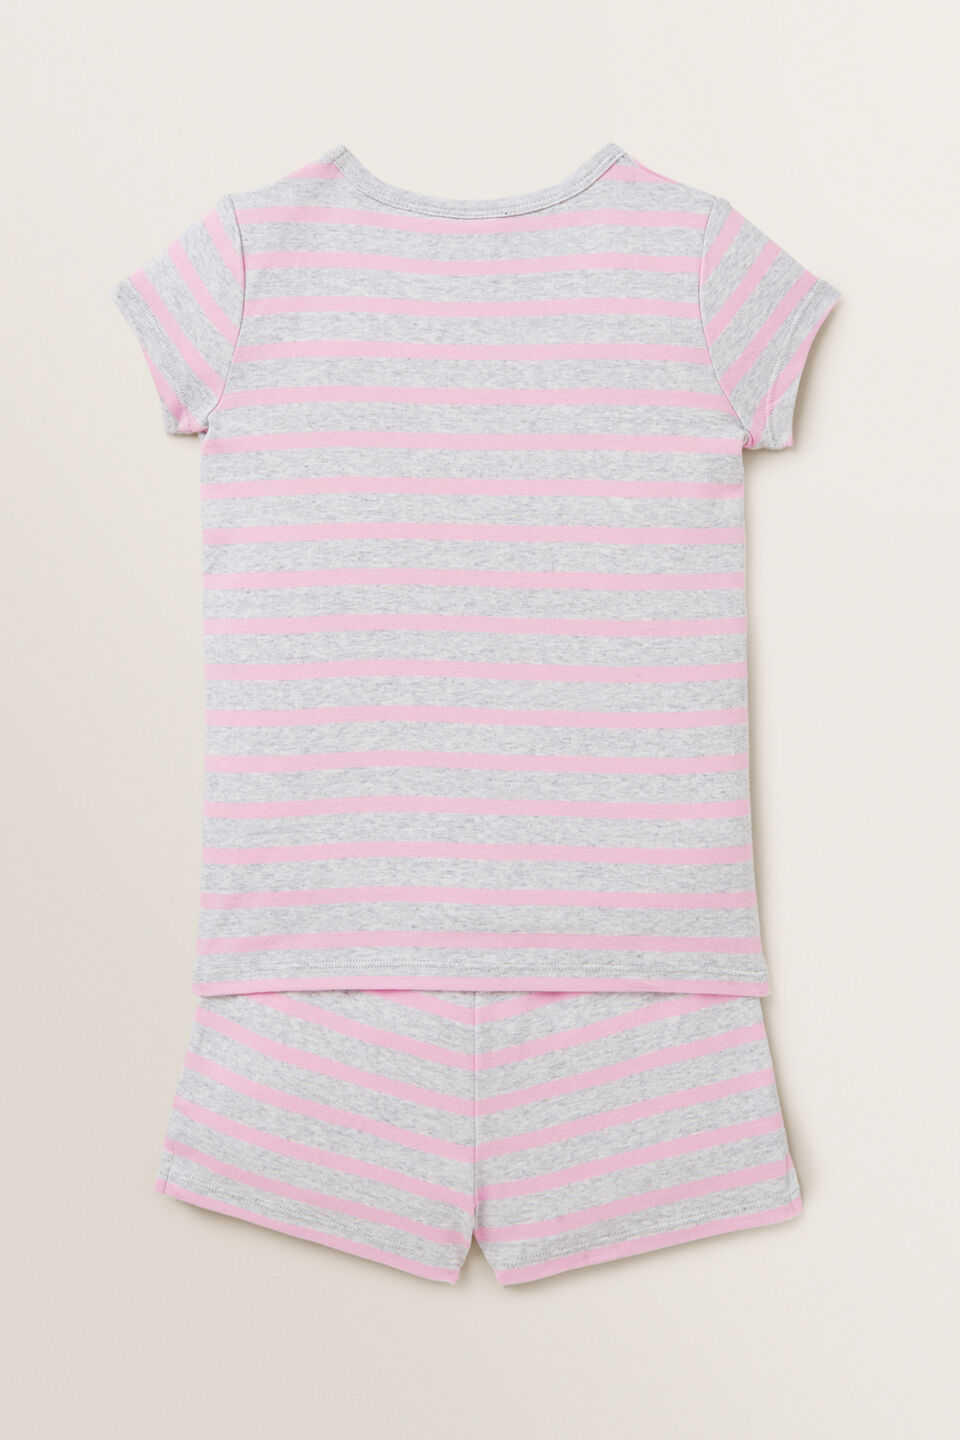 Striped Short Sleeve Pyjamas  